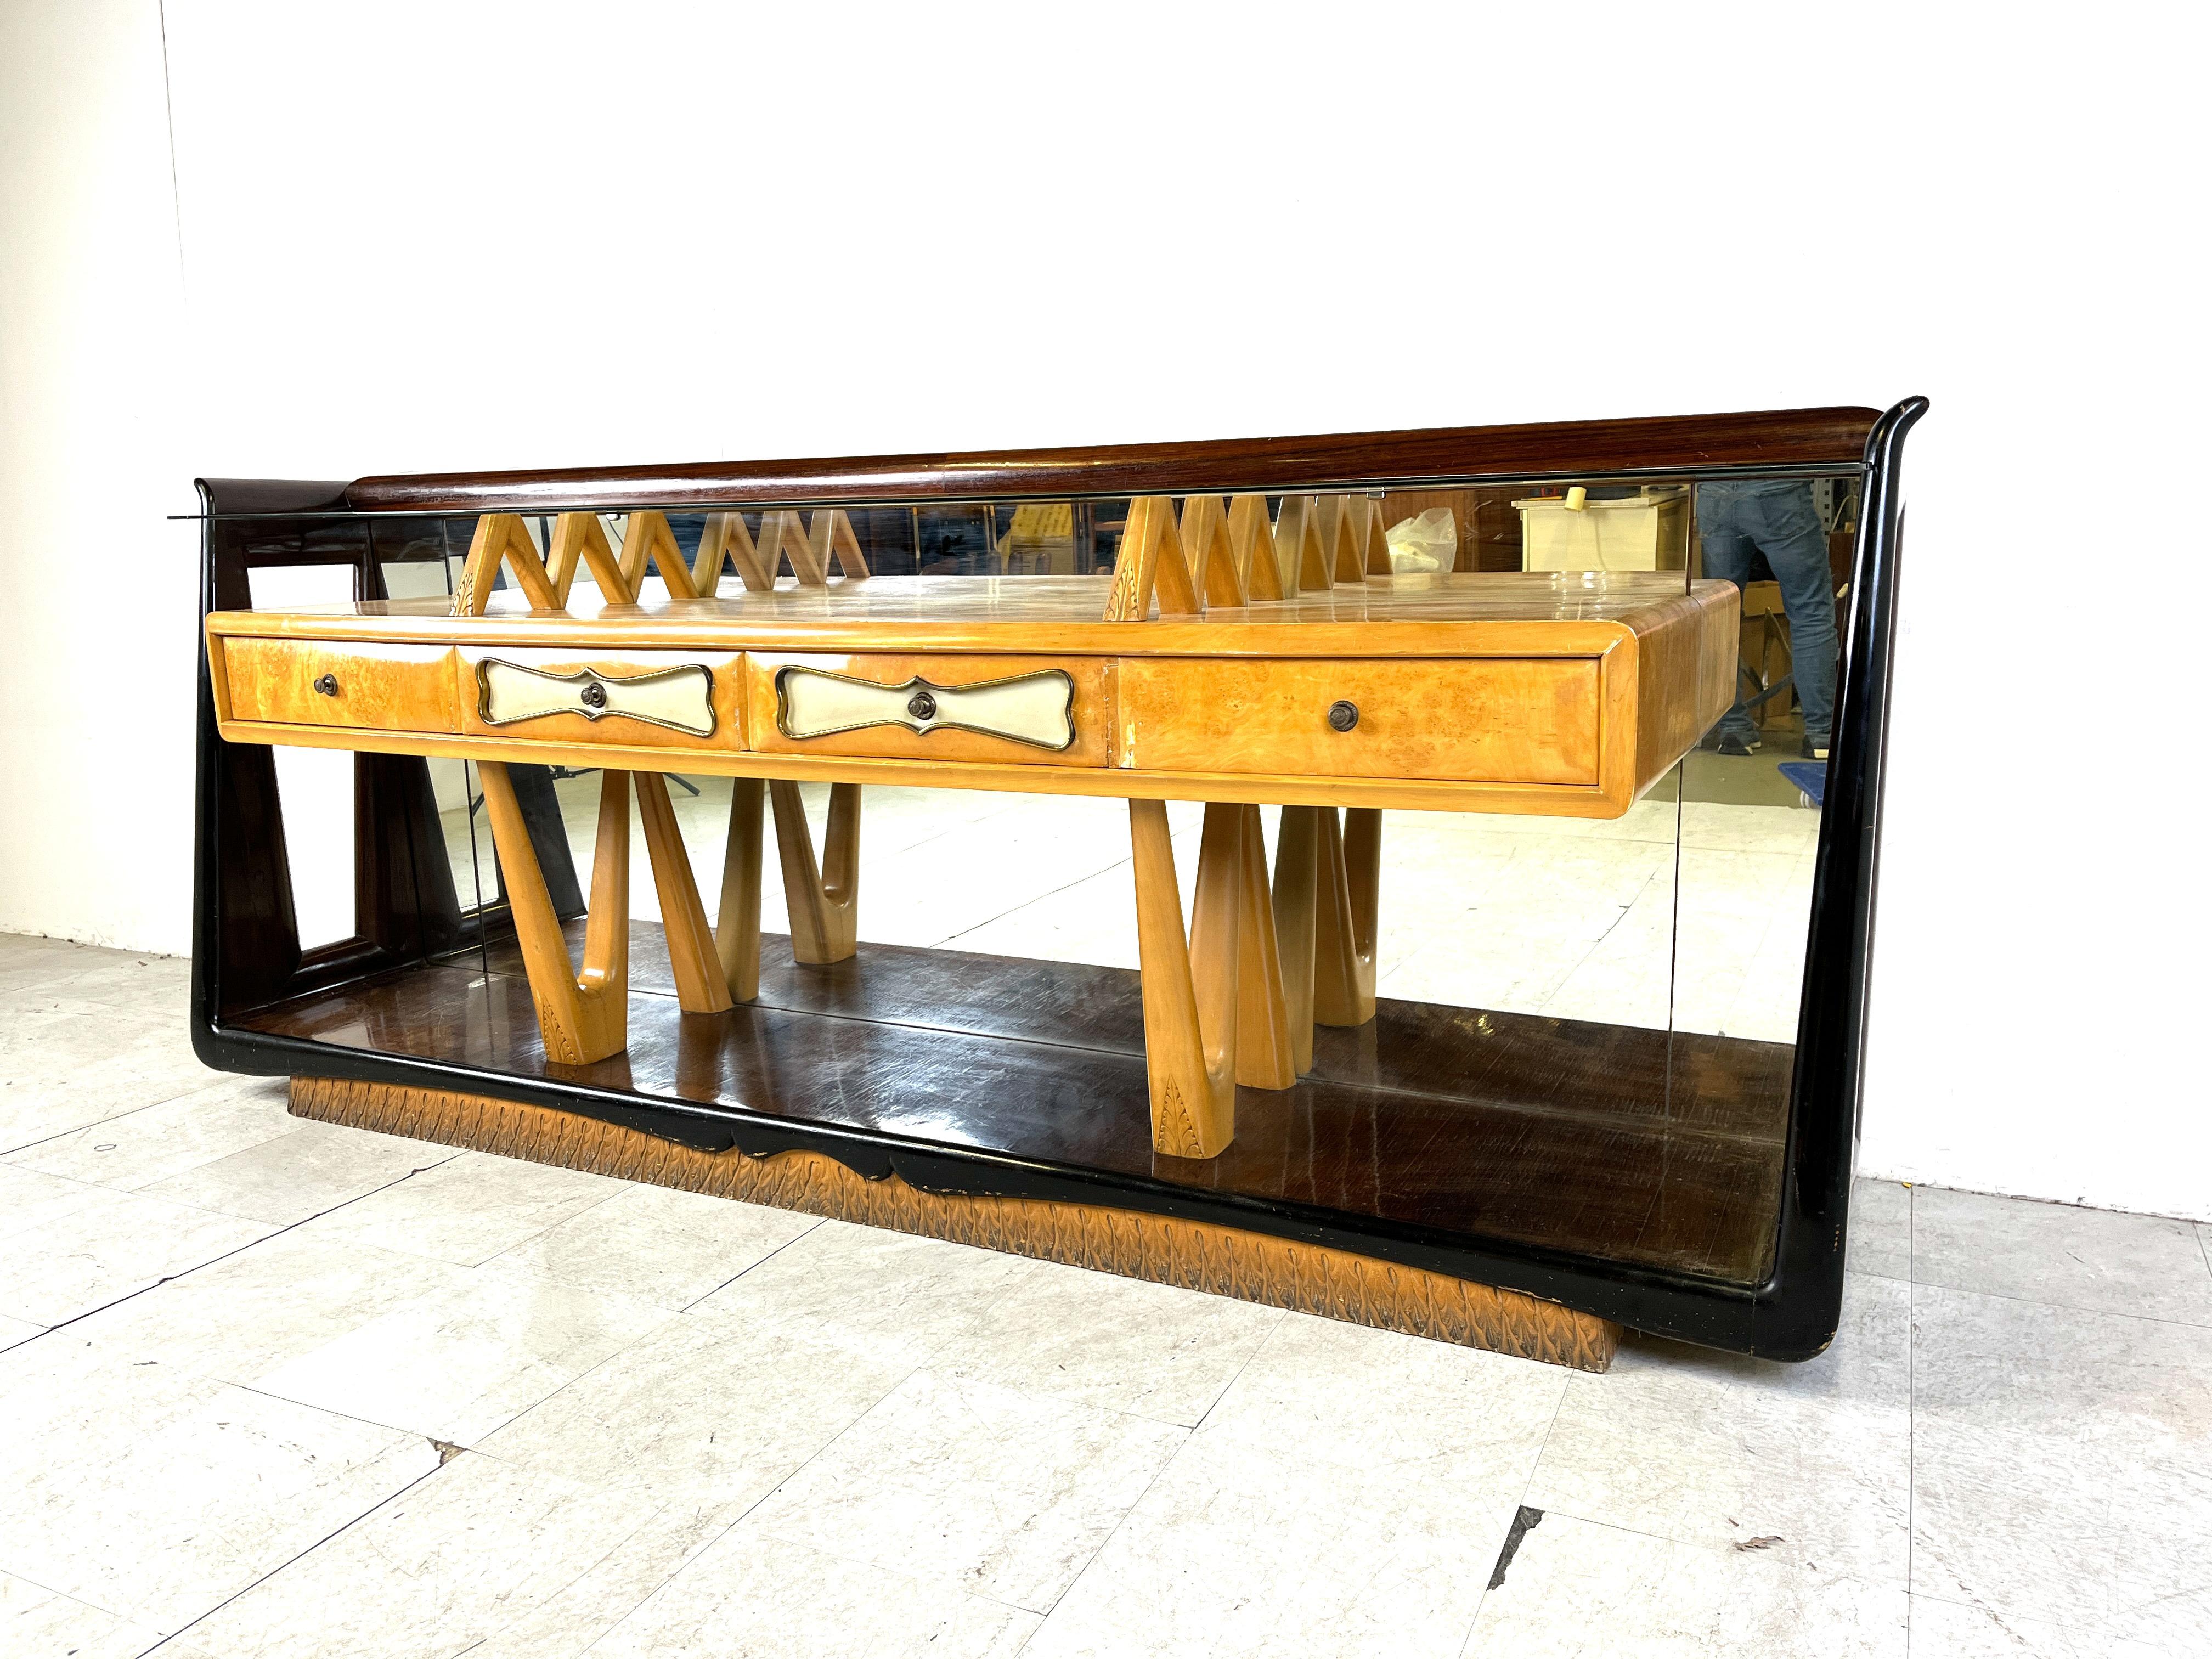 Modernes italienisches Sideboard aus der Mitte des Jahrhunderts von Osvaldo Borsani mit Palisander, Ahornholz und Spiegel.

Das Gehäuse aus Ahornholz hat 4 Schubladen mit Messingdetails und Griffen.

Das Gehäuse wird von fein gearbeiteten Beinen